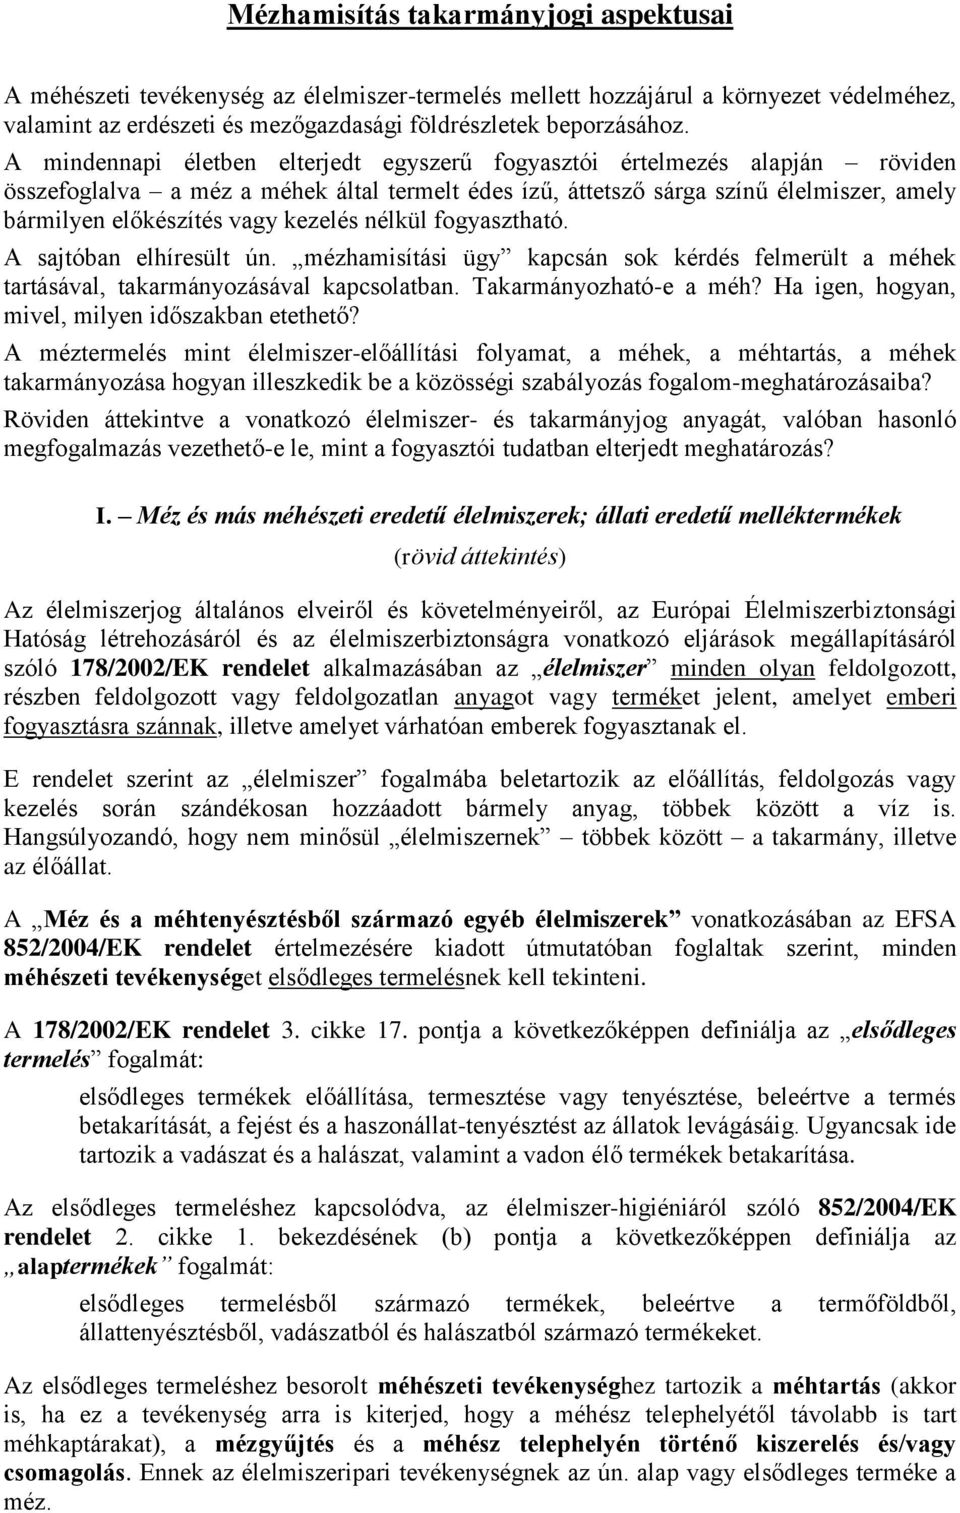 Mézhamisítás takarmányjogi aspektusai - PDF Ingyenes letöltés